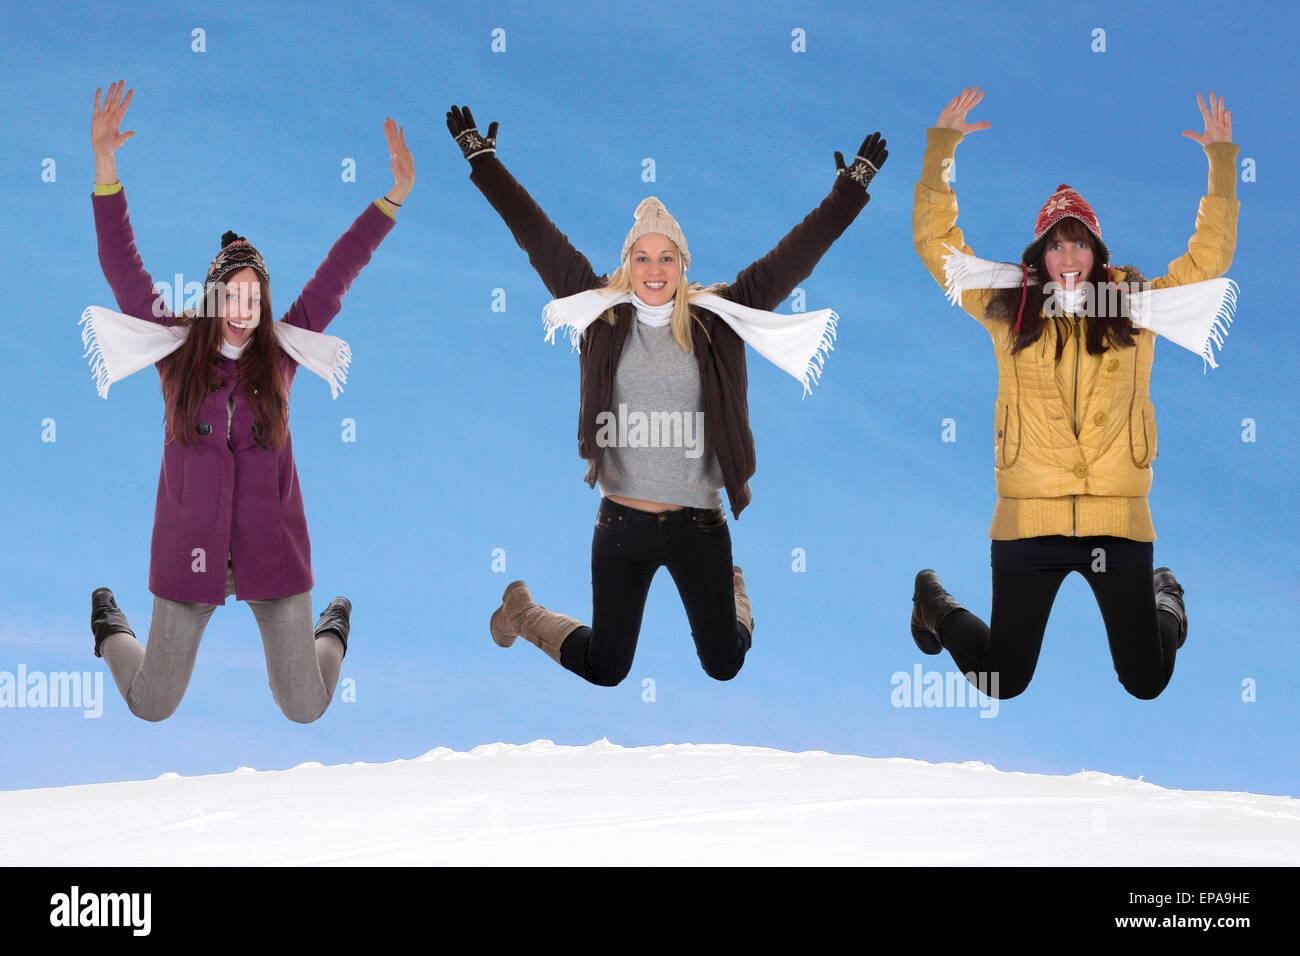 Junge Frauen springen im Winter im Schnee Stock Photo